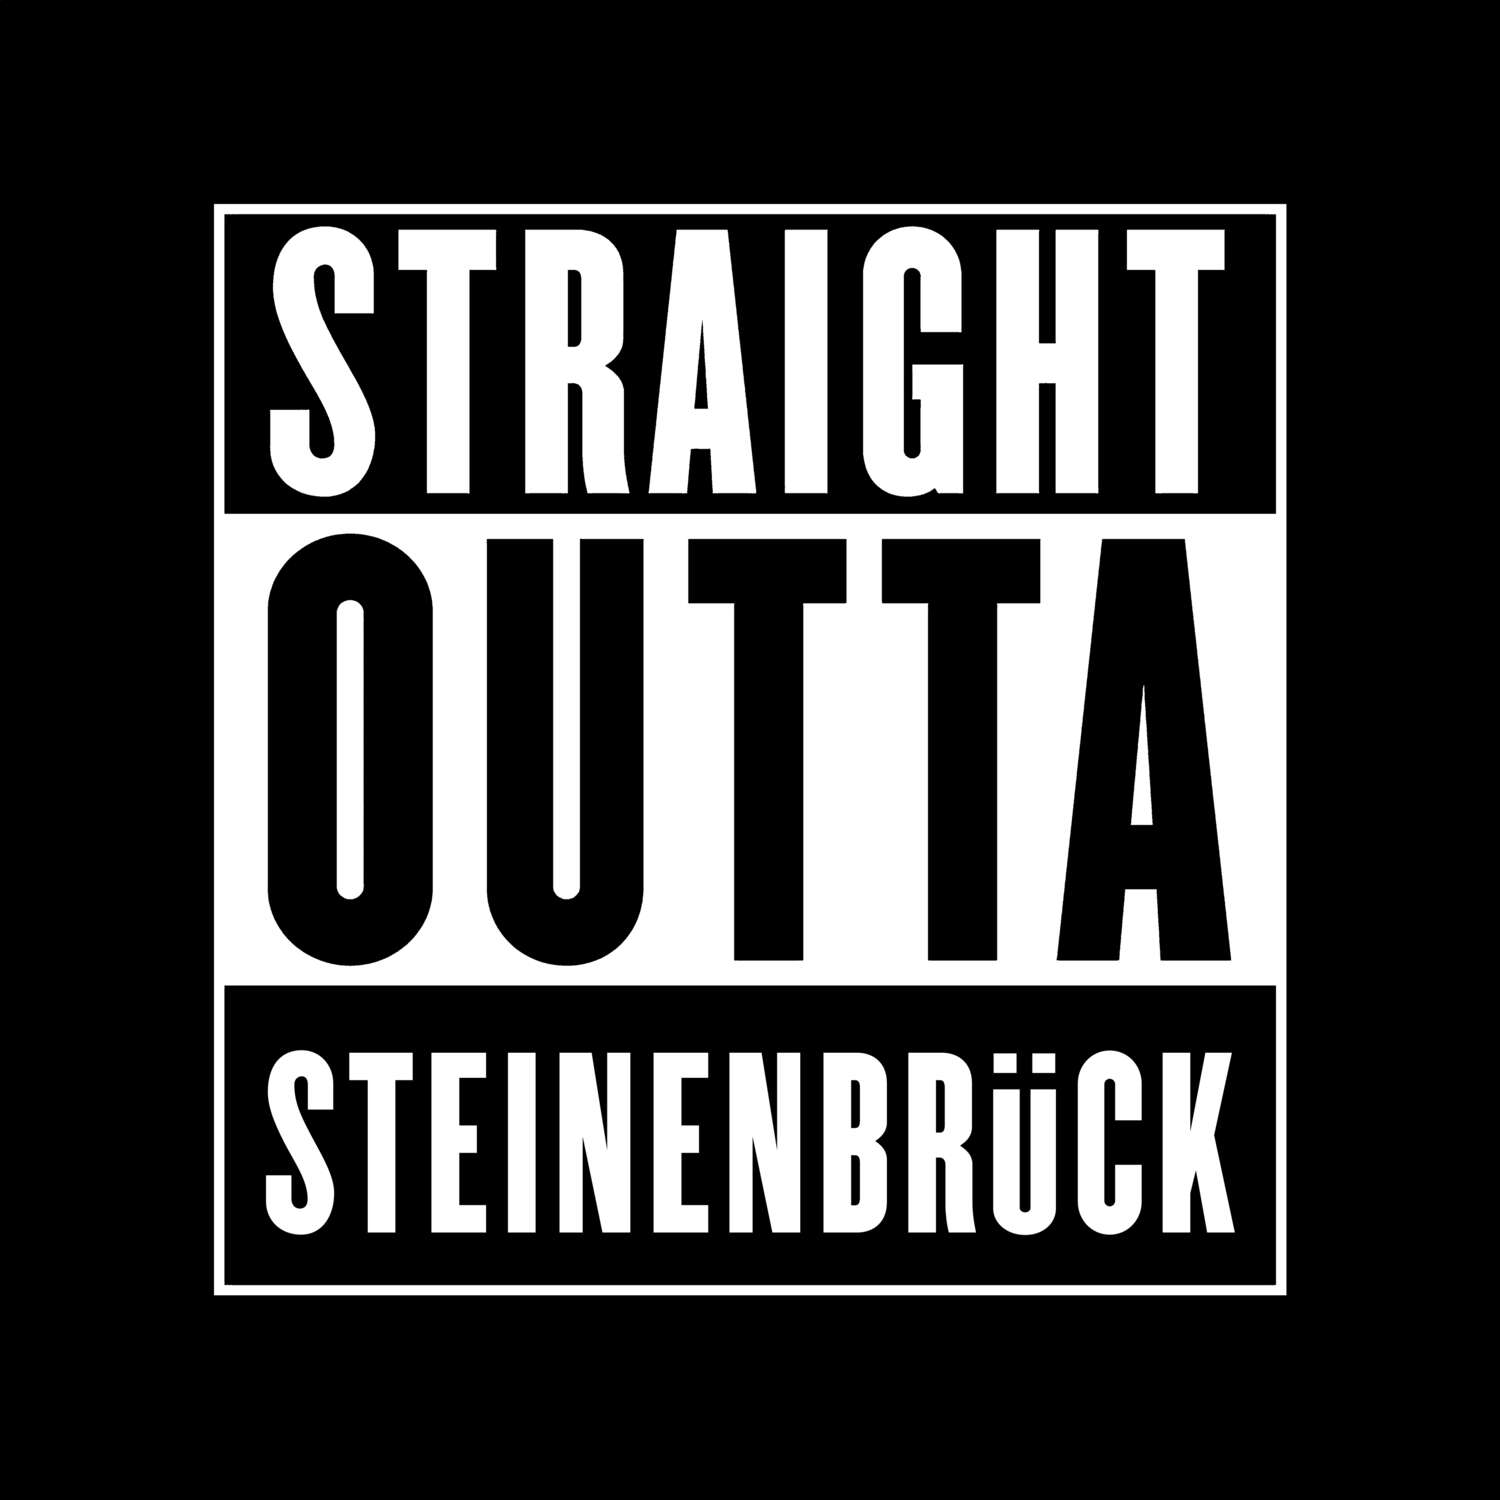 Steinenbrück T-Shirt »Straight Outta«